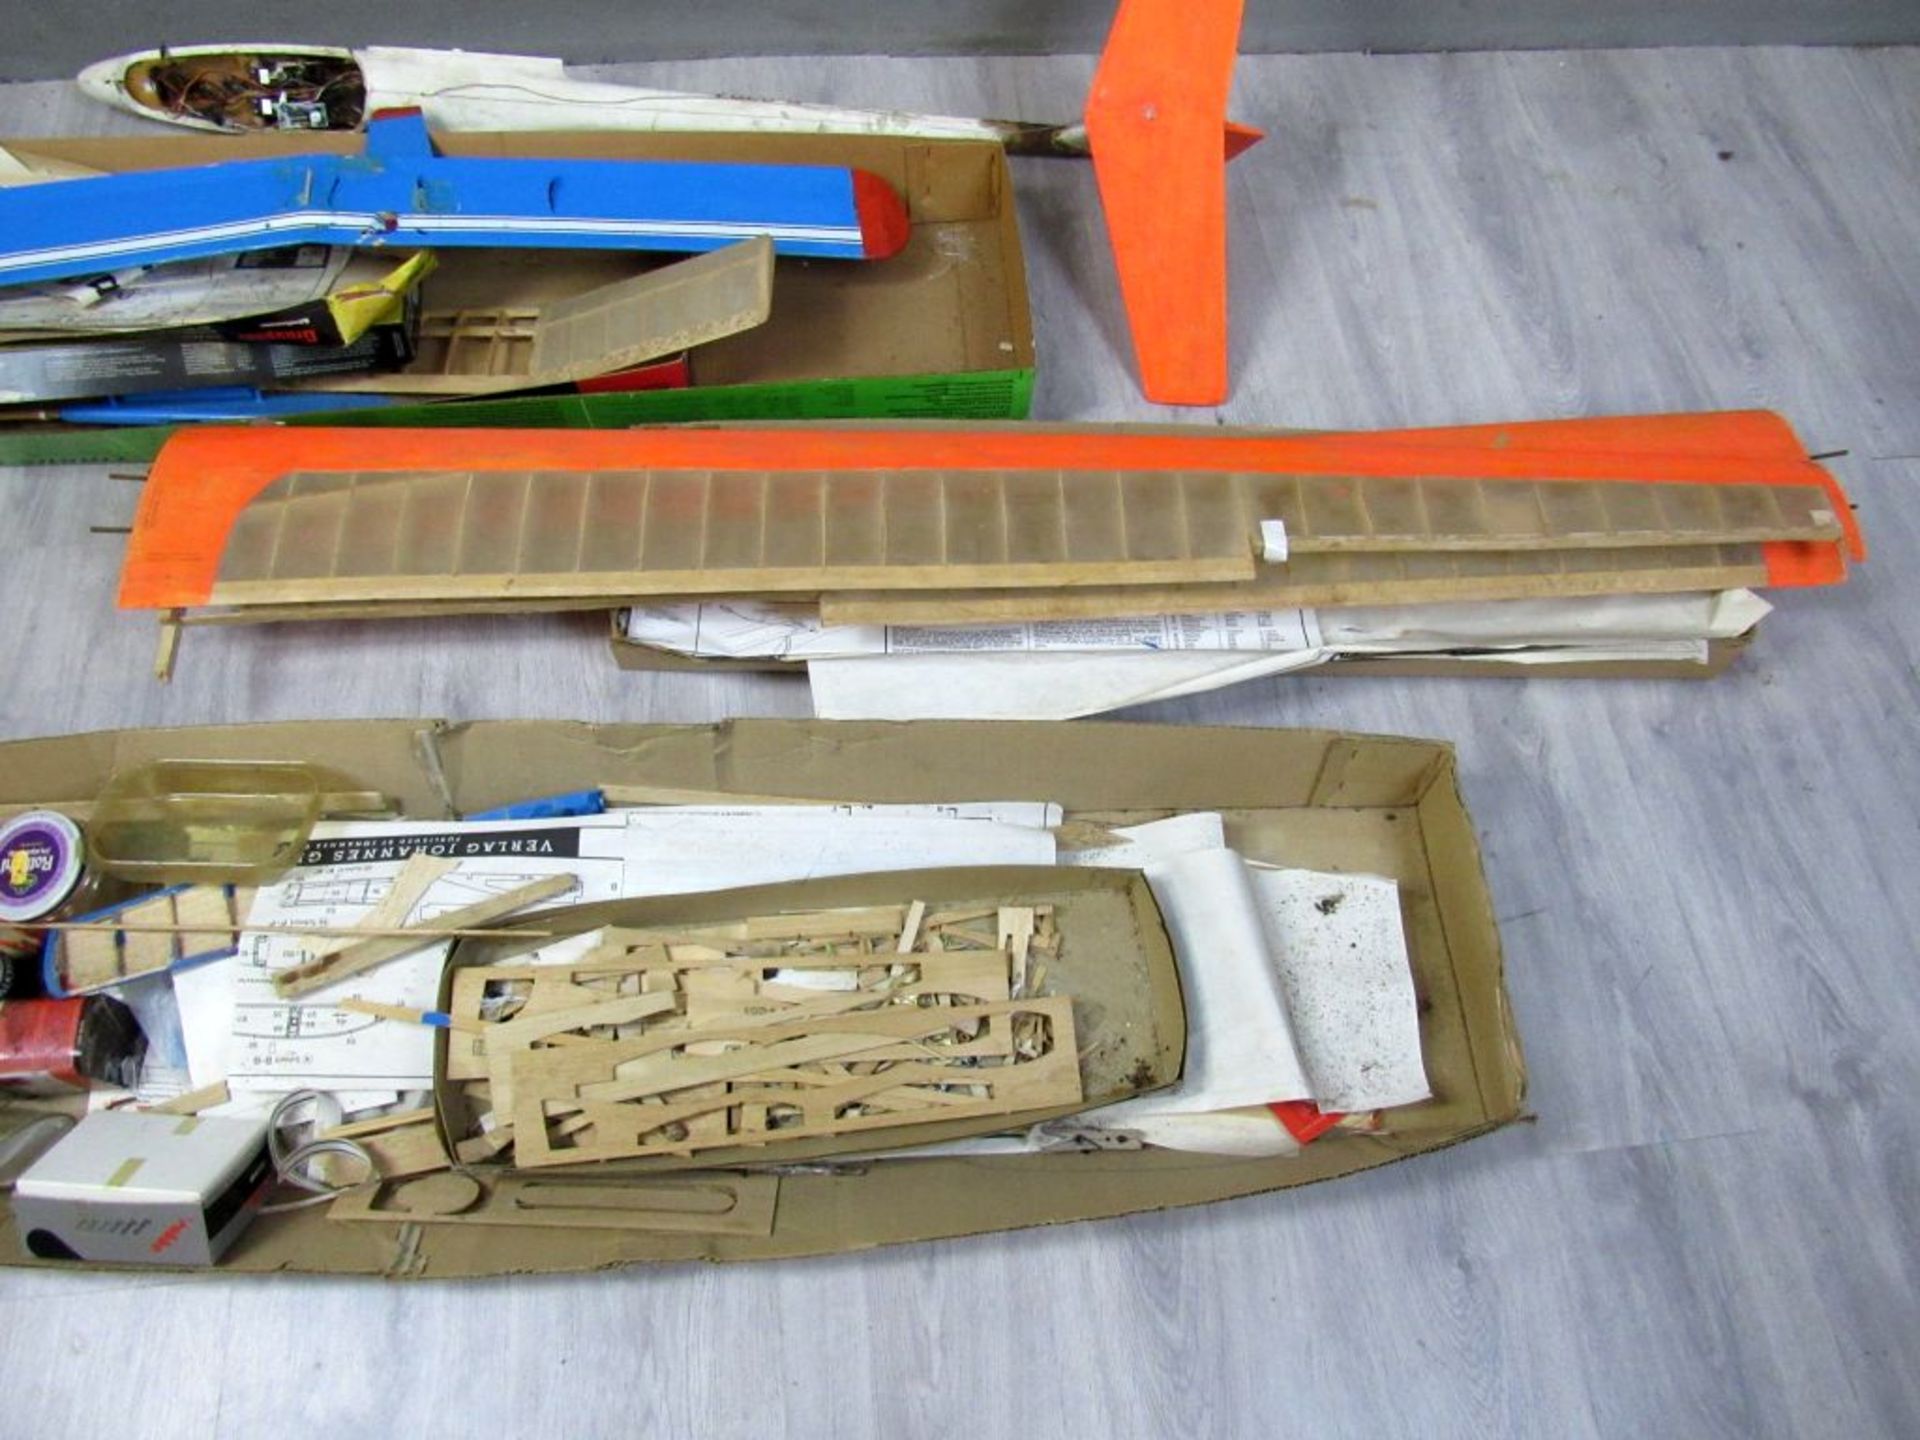 Modellflugzeug Graupner groÃŸer - Bild 3 aus 8